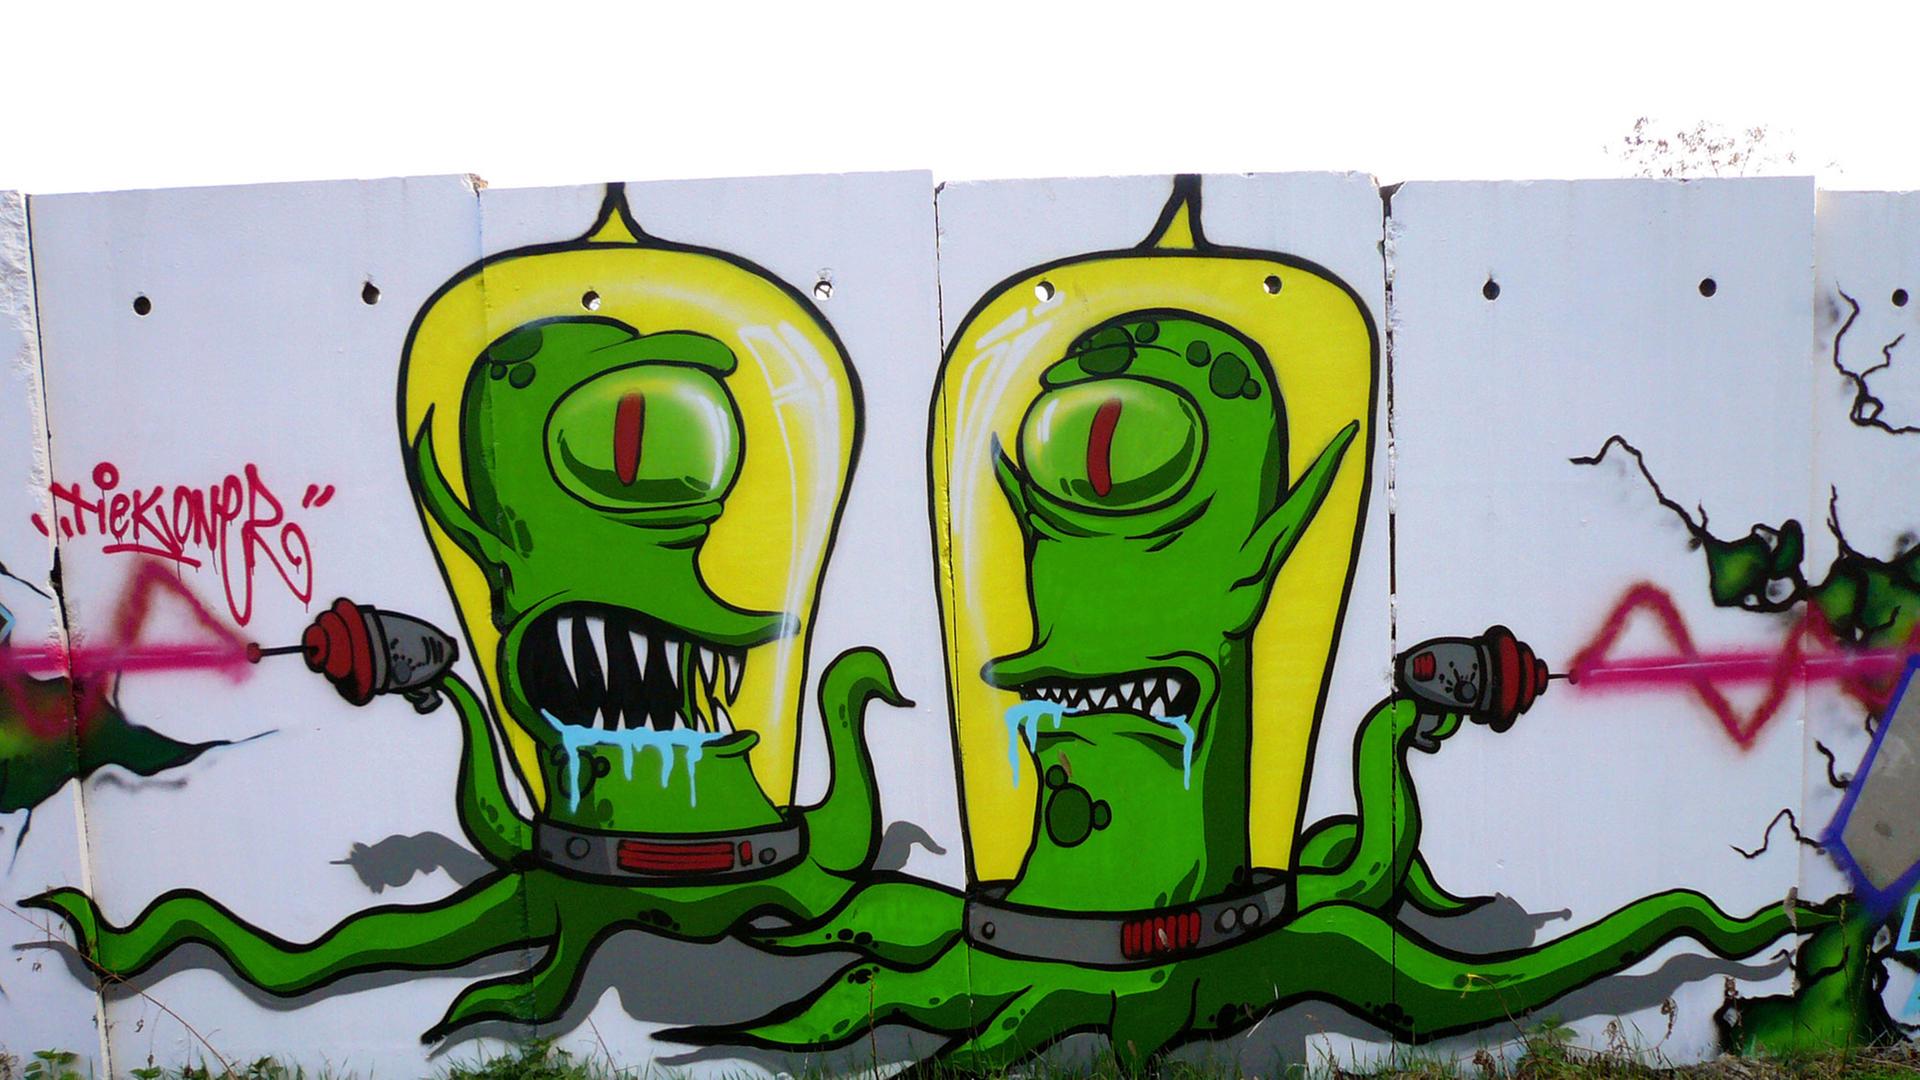 Zwei Außerirdische aus der Comic-Fernsehserie "Die Simpsons" an Mauersegmenten in Berlin.